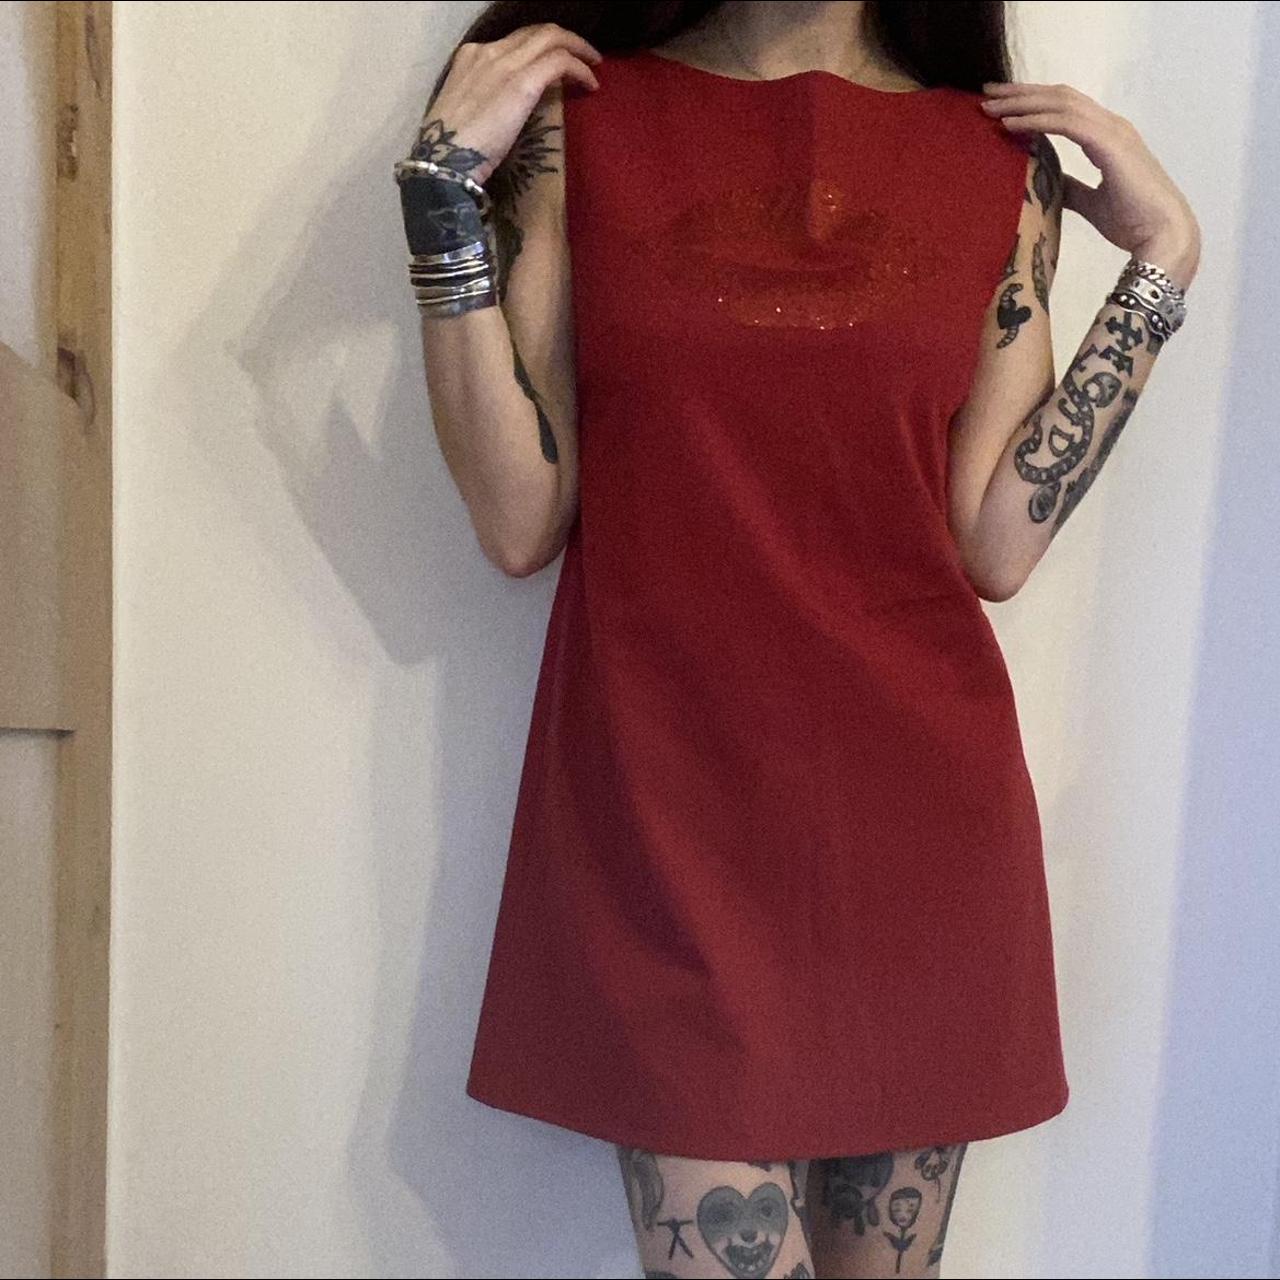 Fiorucci Women's Red Dress | Depop